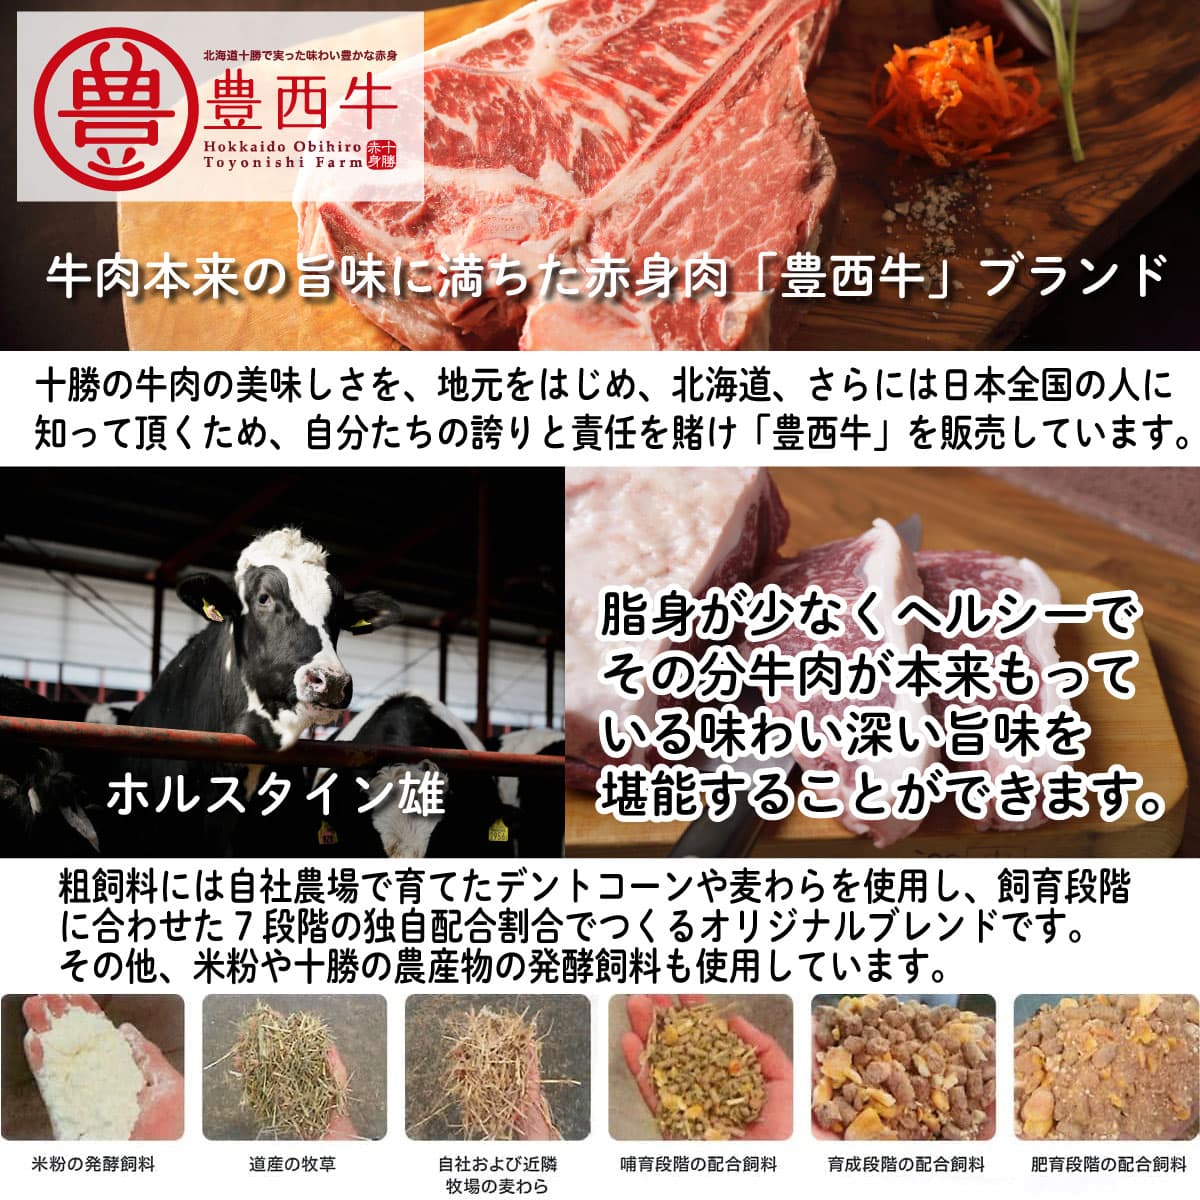 牛肉本来の旨味に満ちた赤身肉「豊西牛」ブランド。十勝の牛肉の美味しさを、地元をはじめ、北海道、さらには日本全国の人に知って頂くため、自分たちの誇りと責任を賭け「豊西牛」を販売しています。脂身が少なくヘルシーでその分牛肉が本来もっている味わい深い旨味を堪能することができます。粗飼料には自社農場で育てたデントコーンや麦わらを使用し、飼育段階に合わせた7段階の独自配合割合でつくるオリジナルブレンドです。その他、米粉や十勝の農産物の発酵飼料も使用しています。